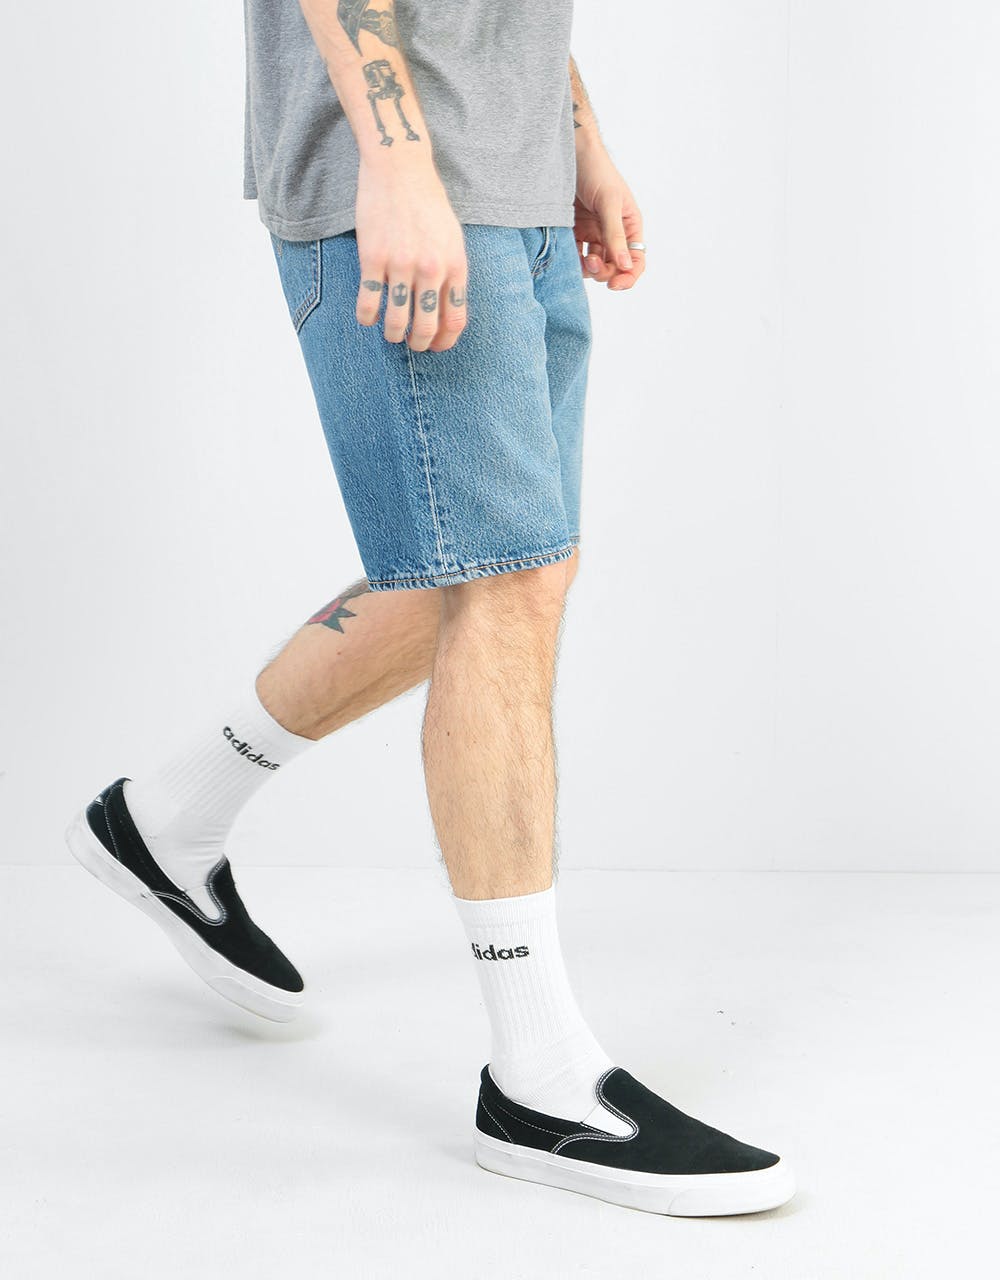 levis 501 hemmed shorts